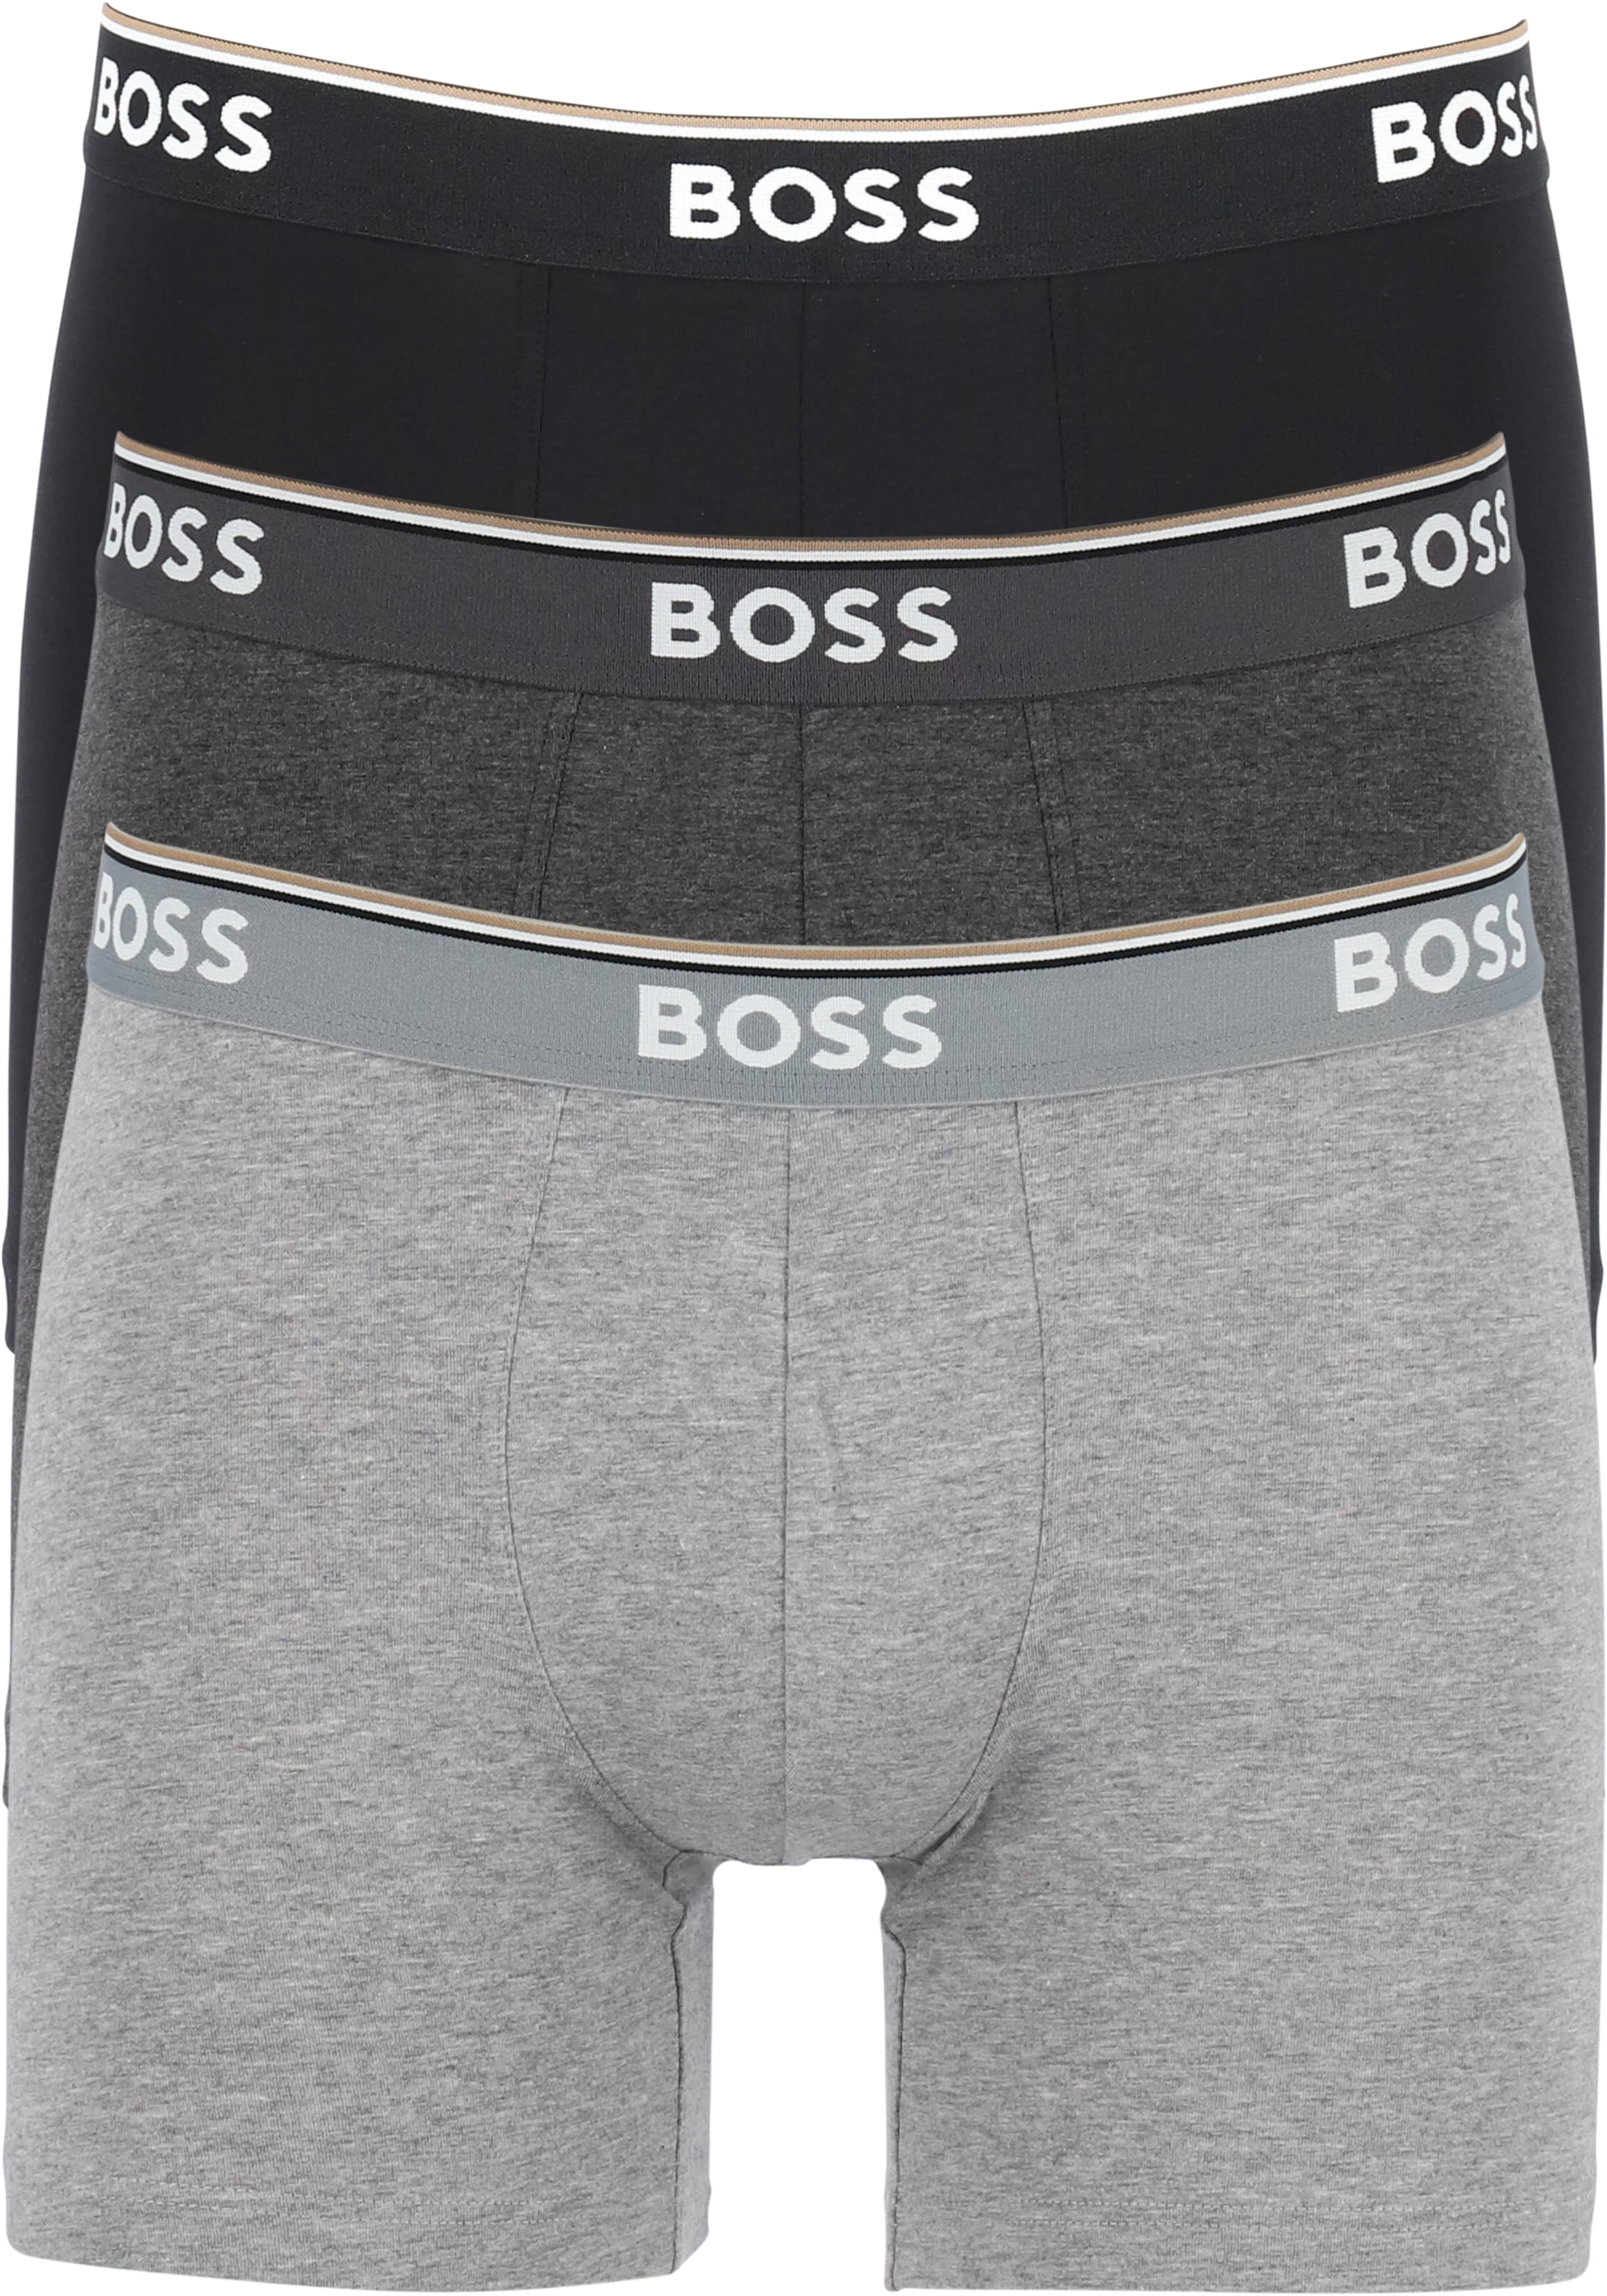 HUGO BOSS Power boxer briefs (3-pack), heren boxers normale lengte, grijs, grijs, zwart